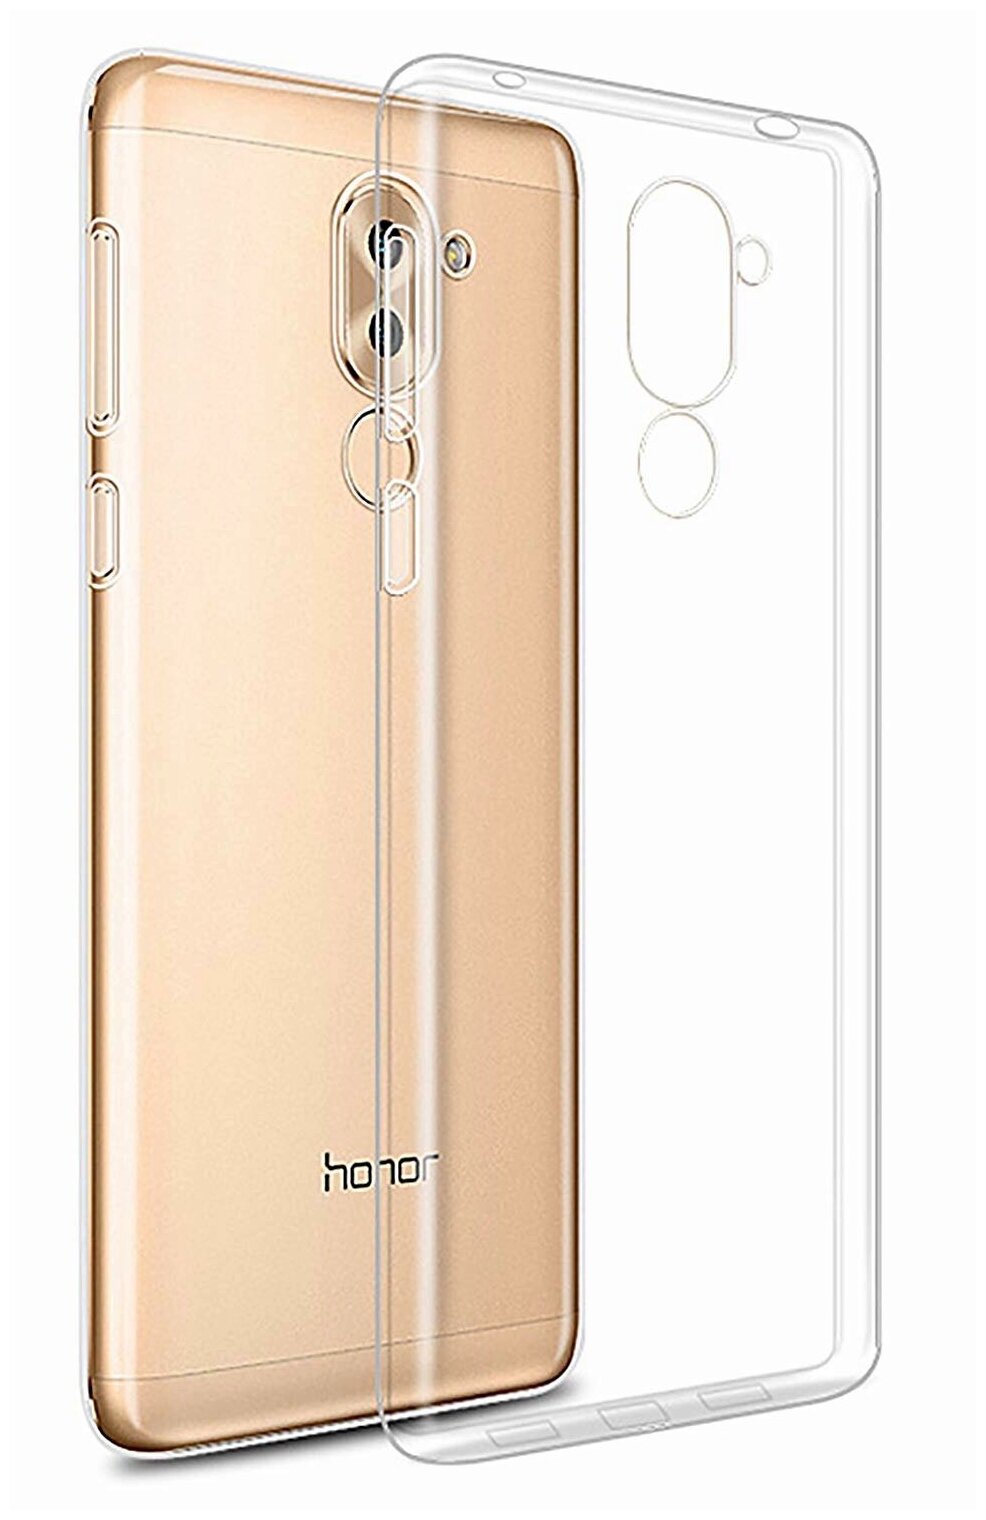 Чехол панель-накладка MyPads для for Huawei Honor 6X (BLN-AL10) 5.5 ультра-тонкая полимерная из мягкого качественного силикона прозрачная